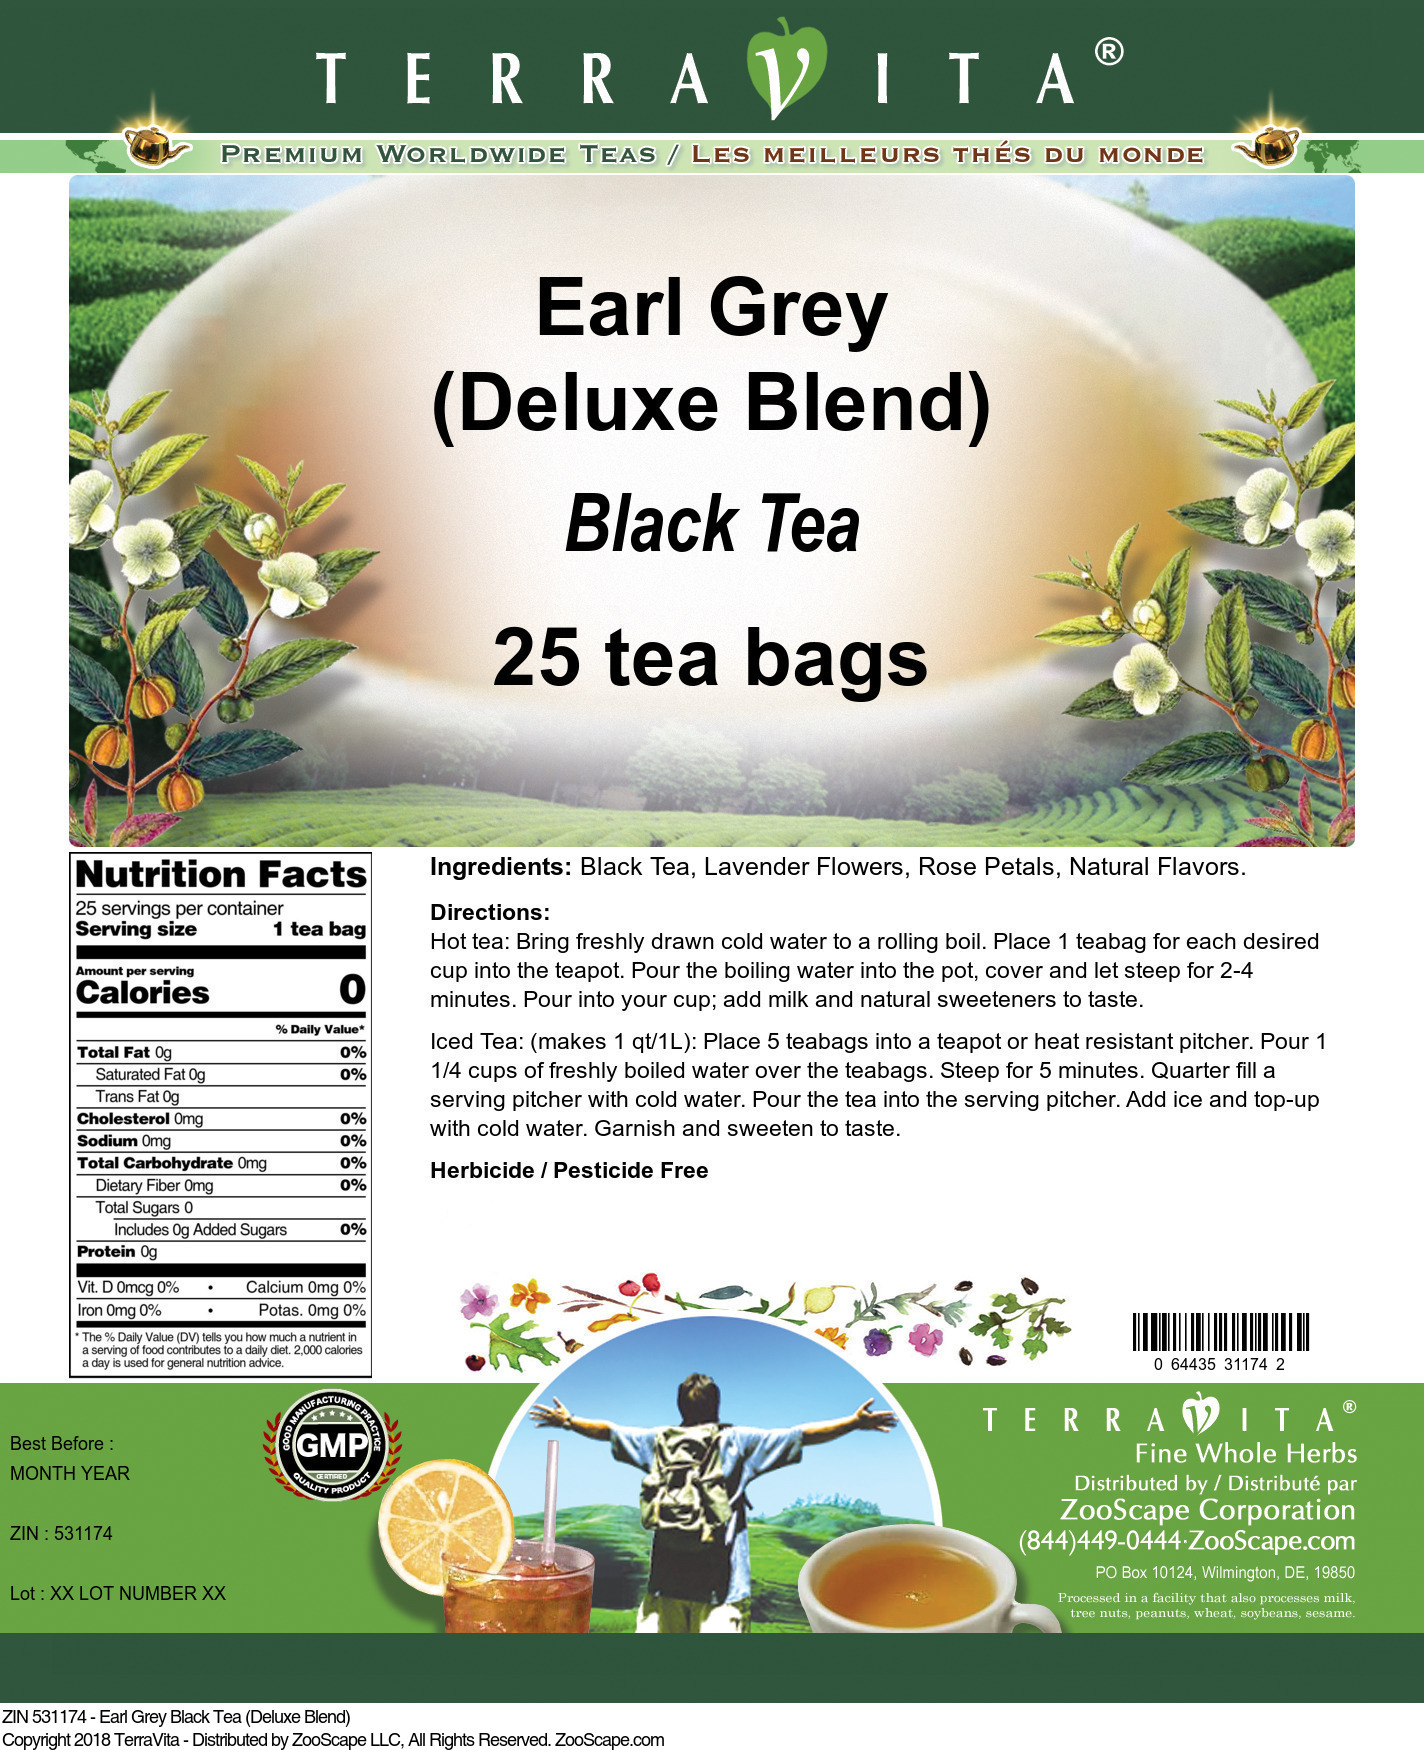 Earl Grey Black Tea (Deluxe Blend) - Label